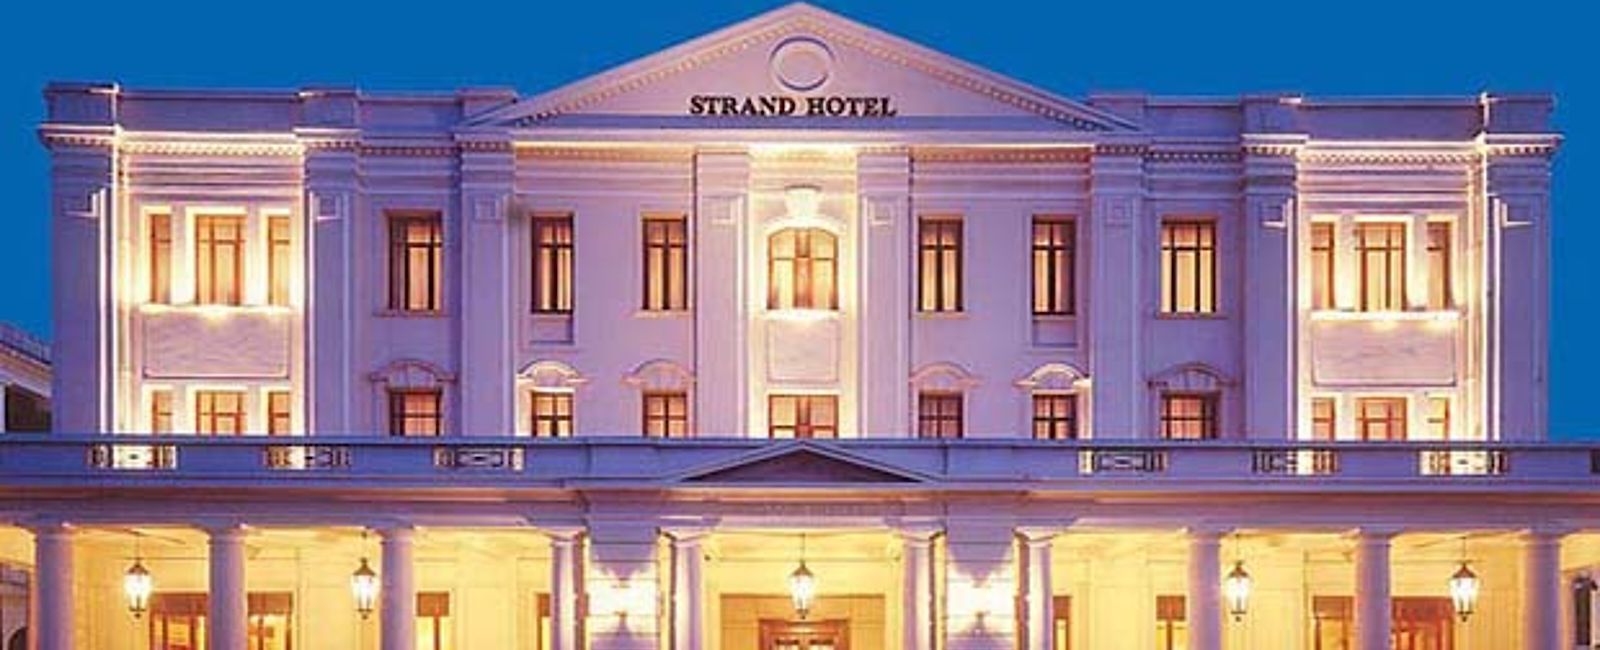 HOTEL TIPPS
 Strand Hotel 
 Luxus Hotel im Stil der 20er und 30er Jahre 